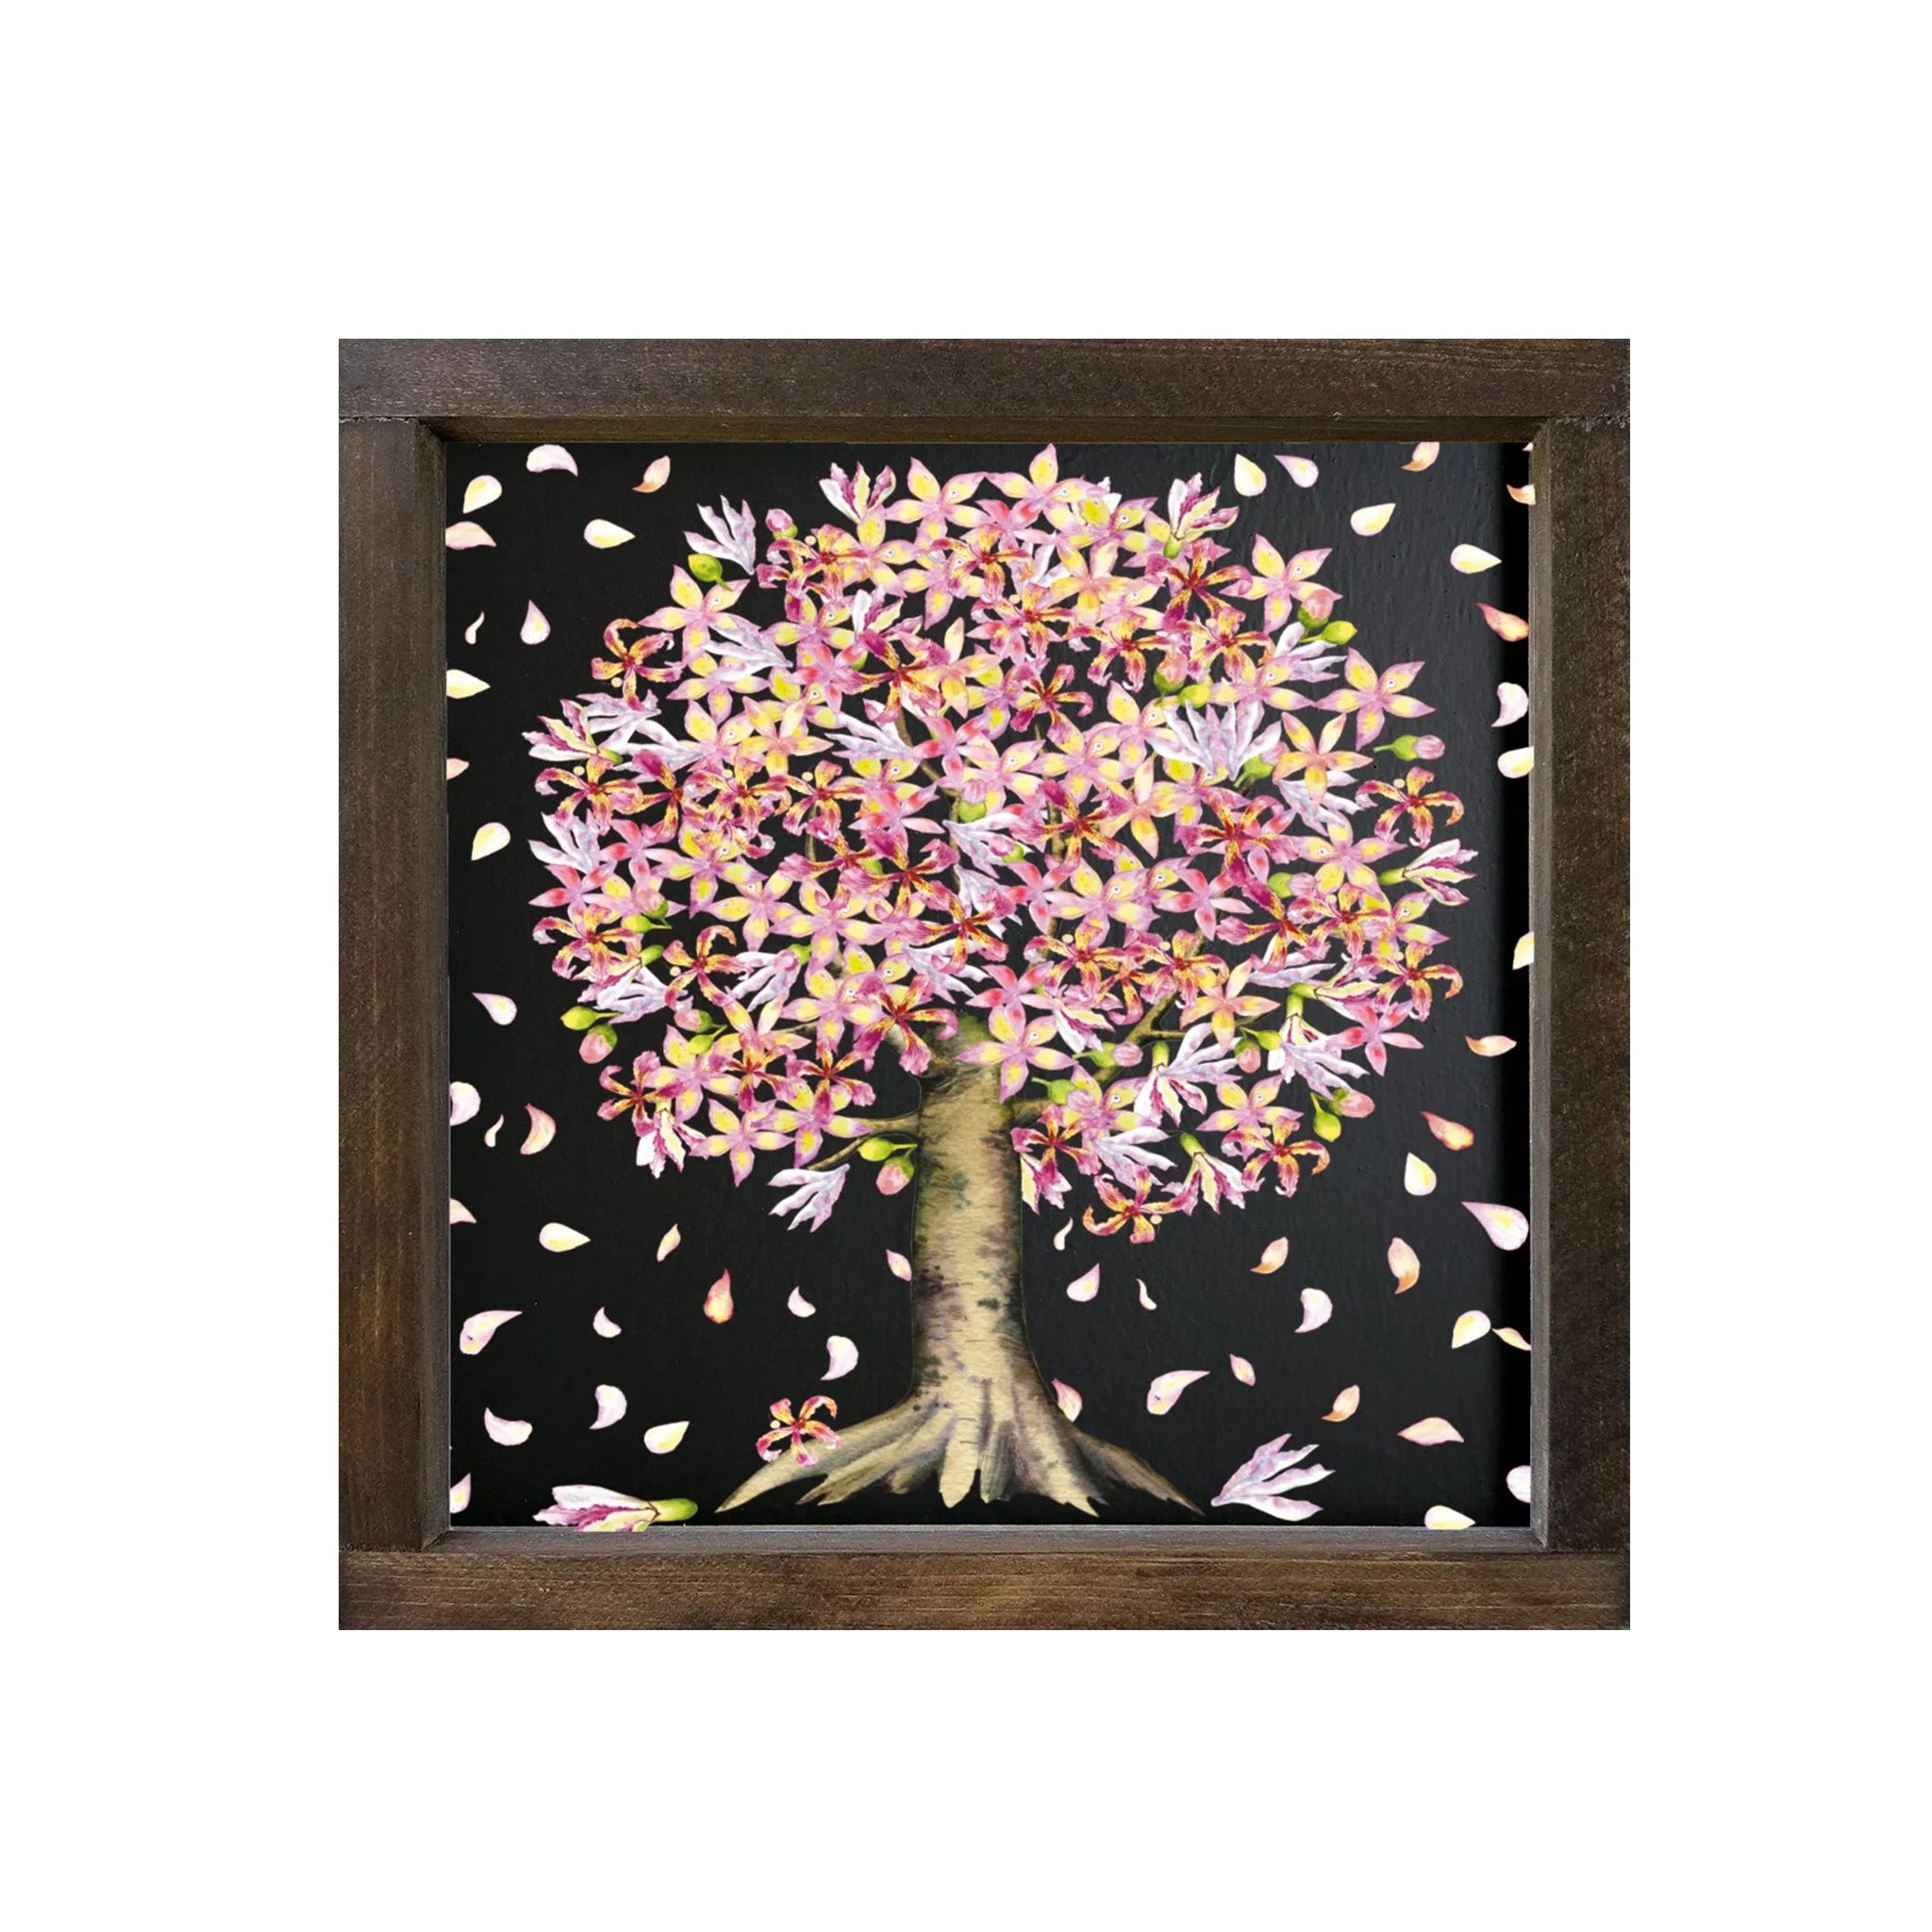 Tree Spring Art Raining Petals Framed Wood Sign - 12